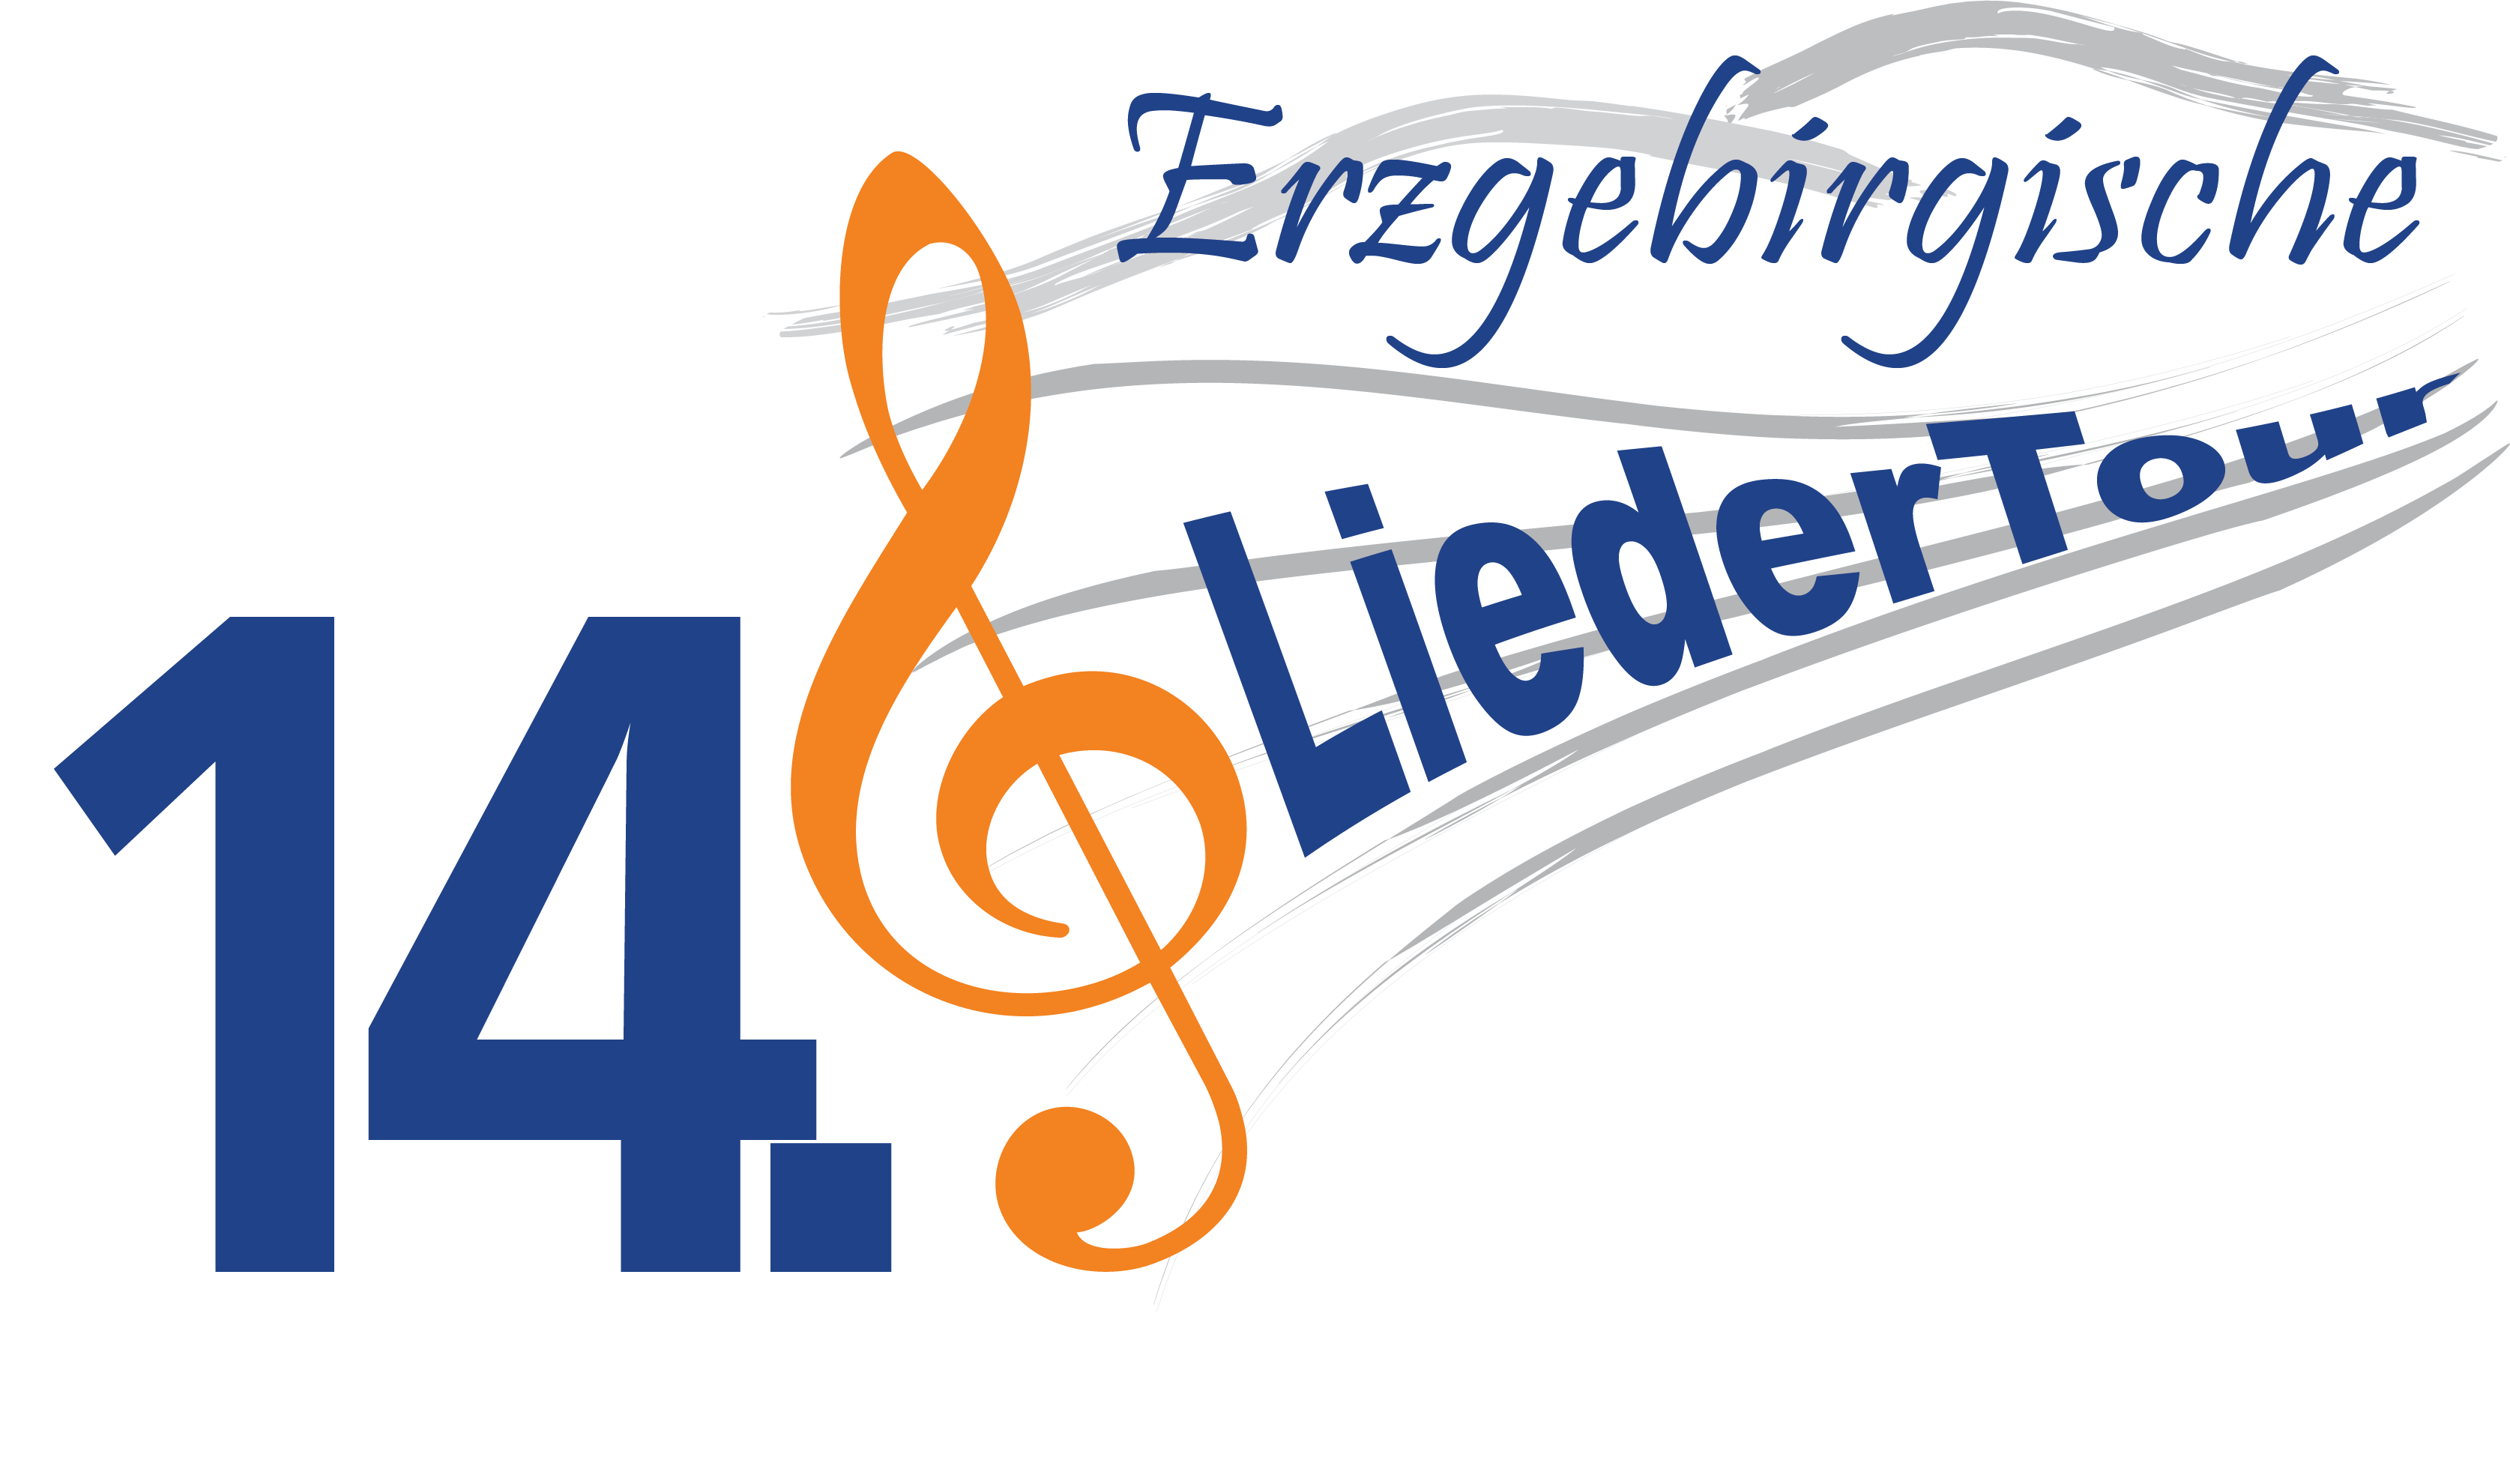 14 Liedertour logo